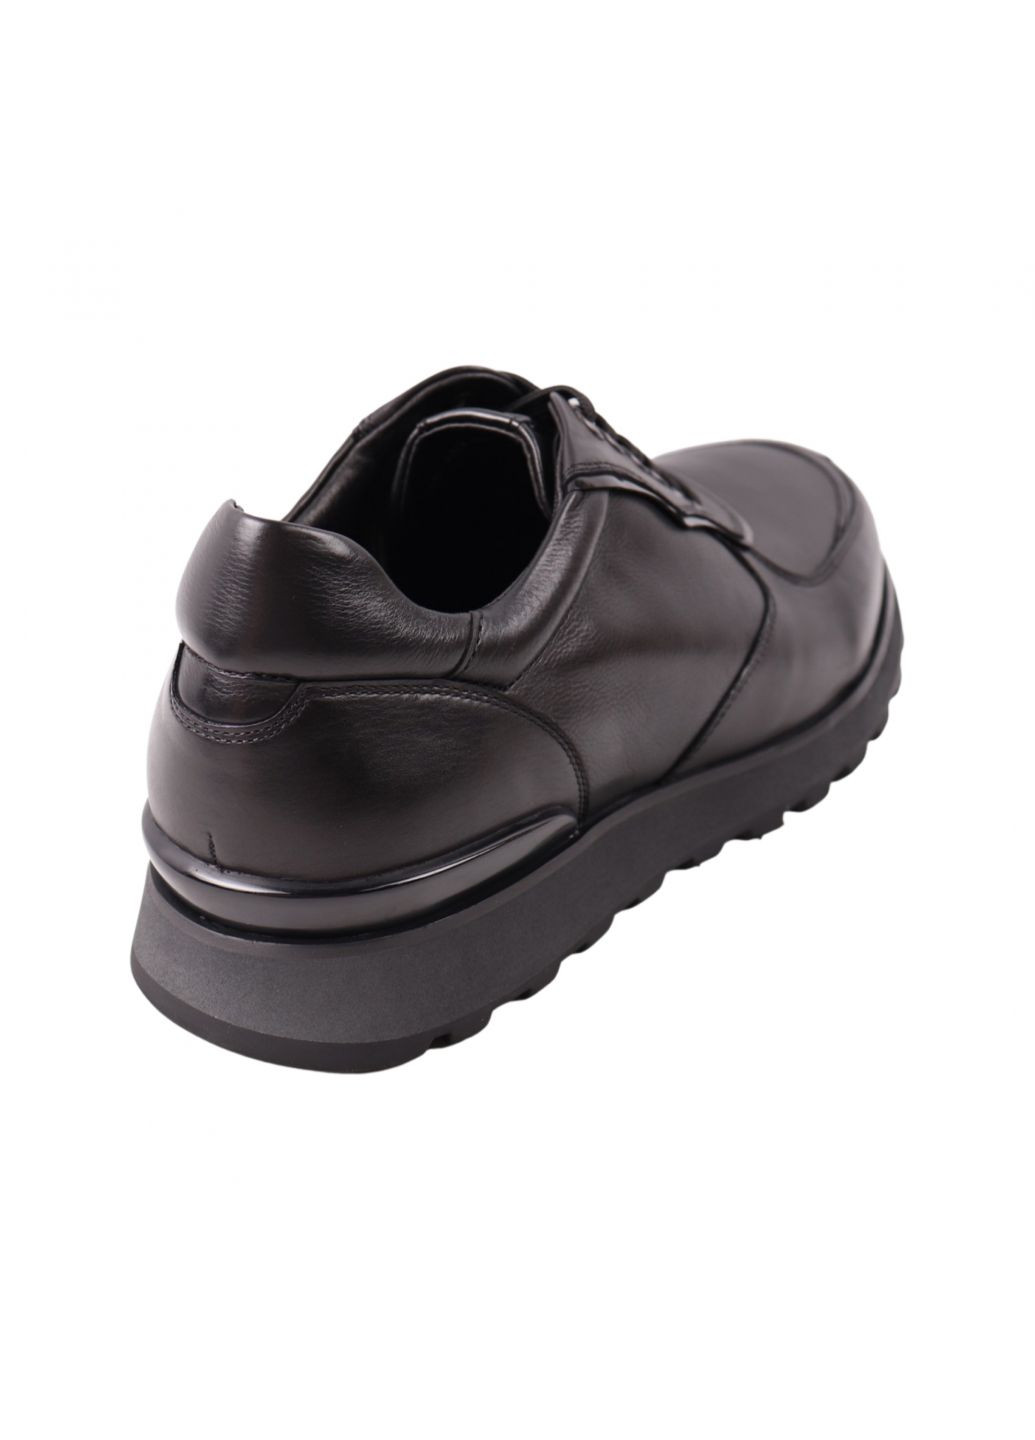 Черные кроссовки мужские черные натуральная кожа Clemento 56-23DTS